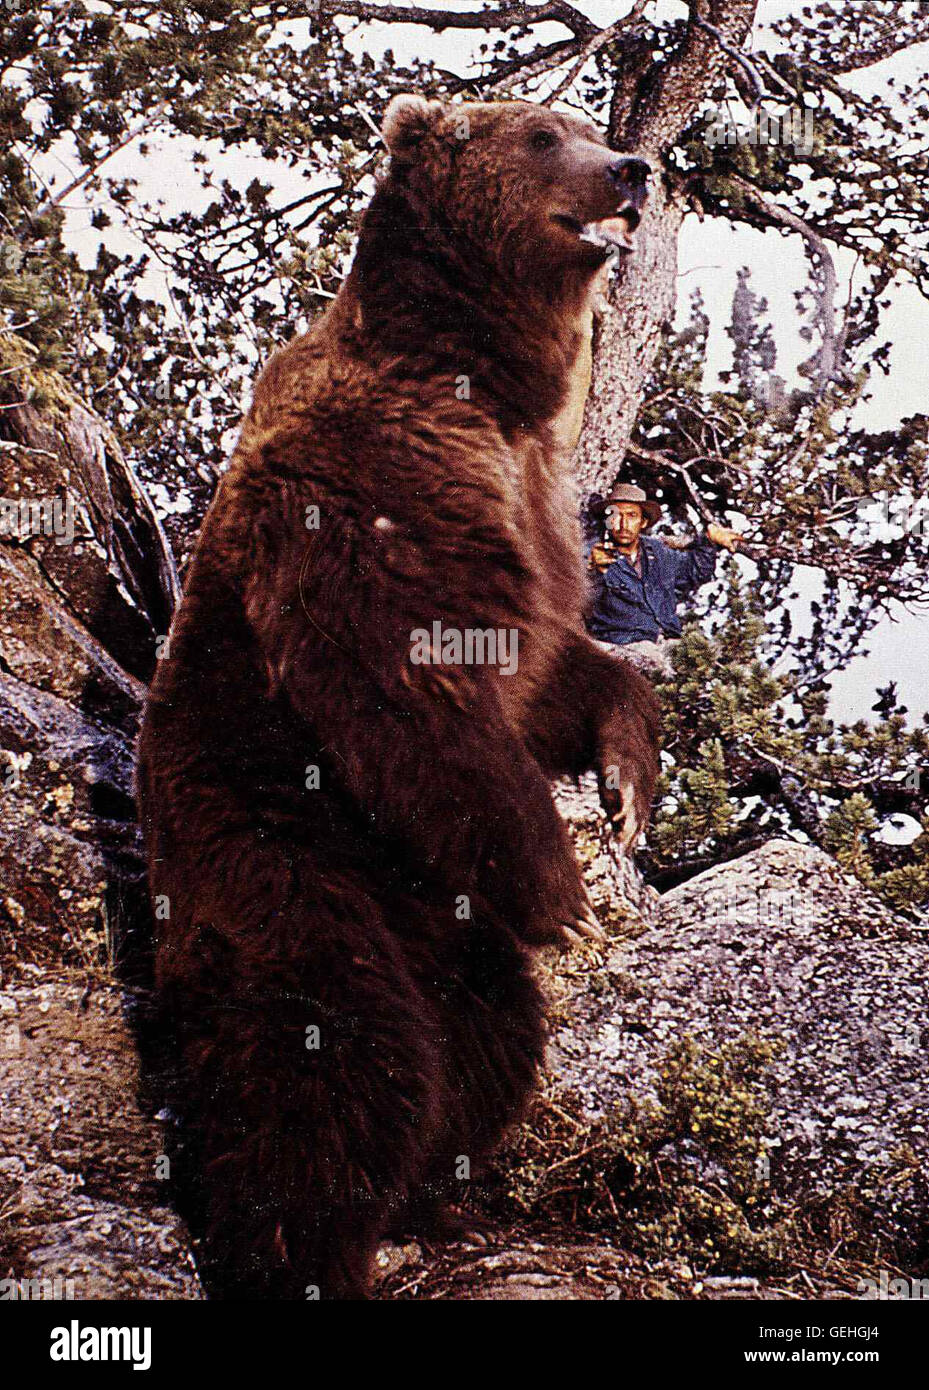 Hugh Webster   Nach einigen Jahren kehrt der ausgewachsene Grizzly aus den Bergen zurueck und erschreckt den faulen Shorty (Hugh Webster). *** Local Caption *** 1970, King Of The Grizzlies, The, Koenig Der Grizzlys Stock Photo